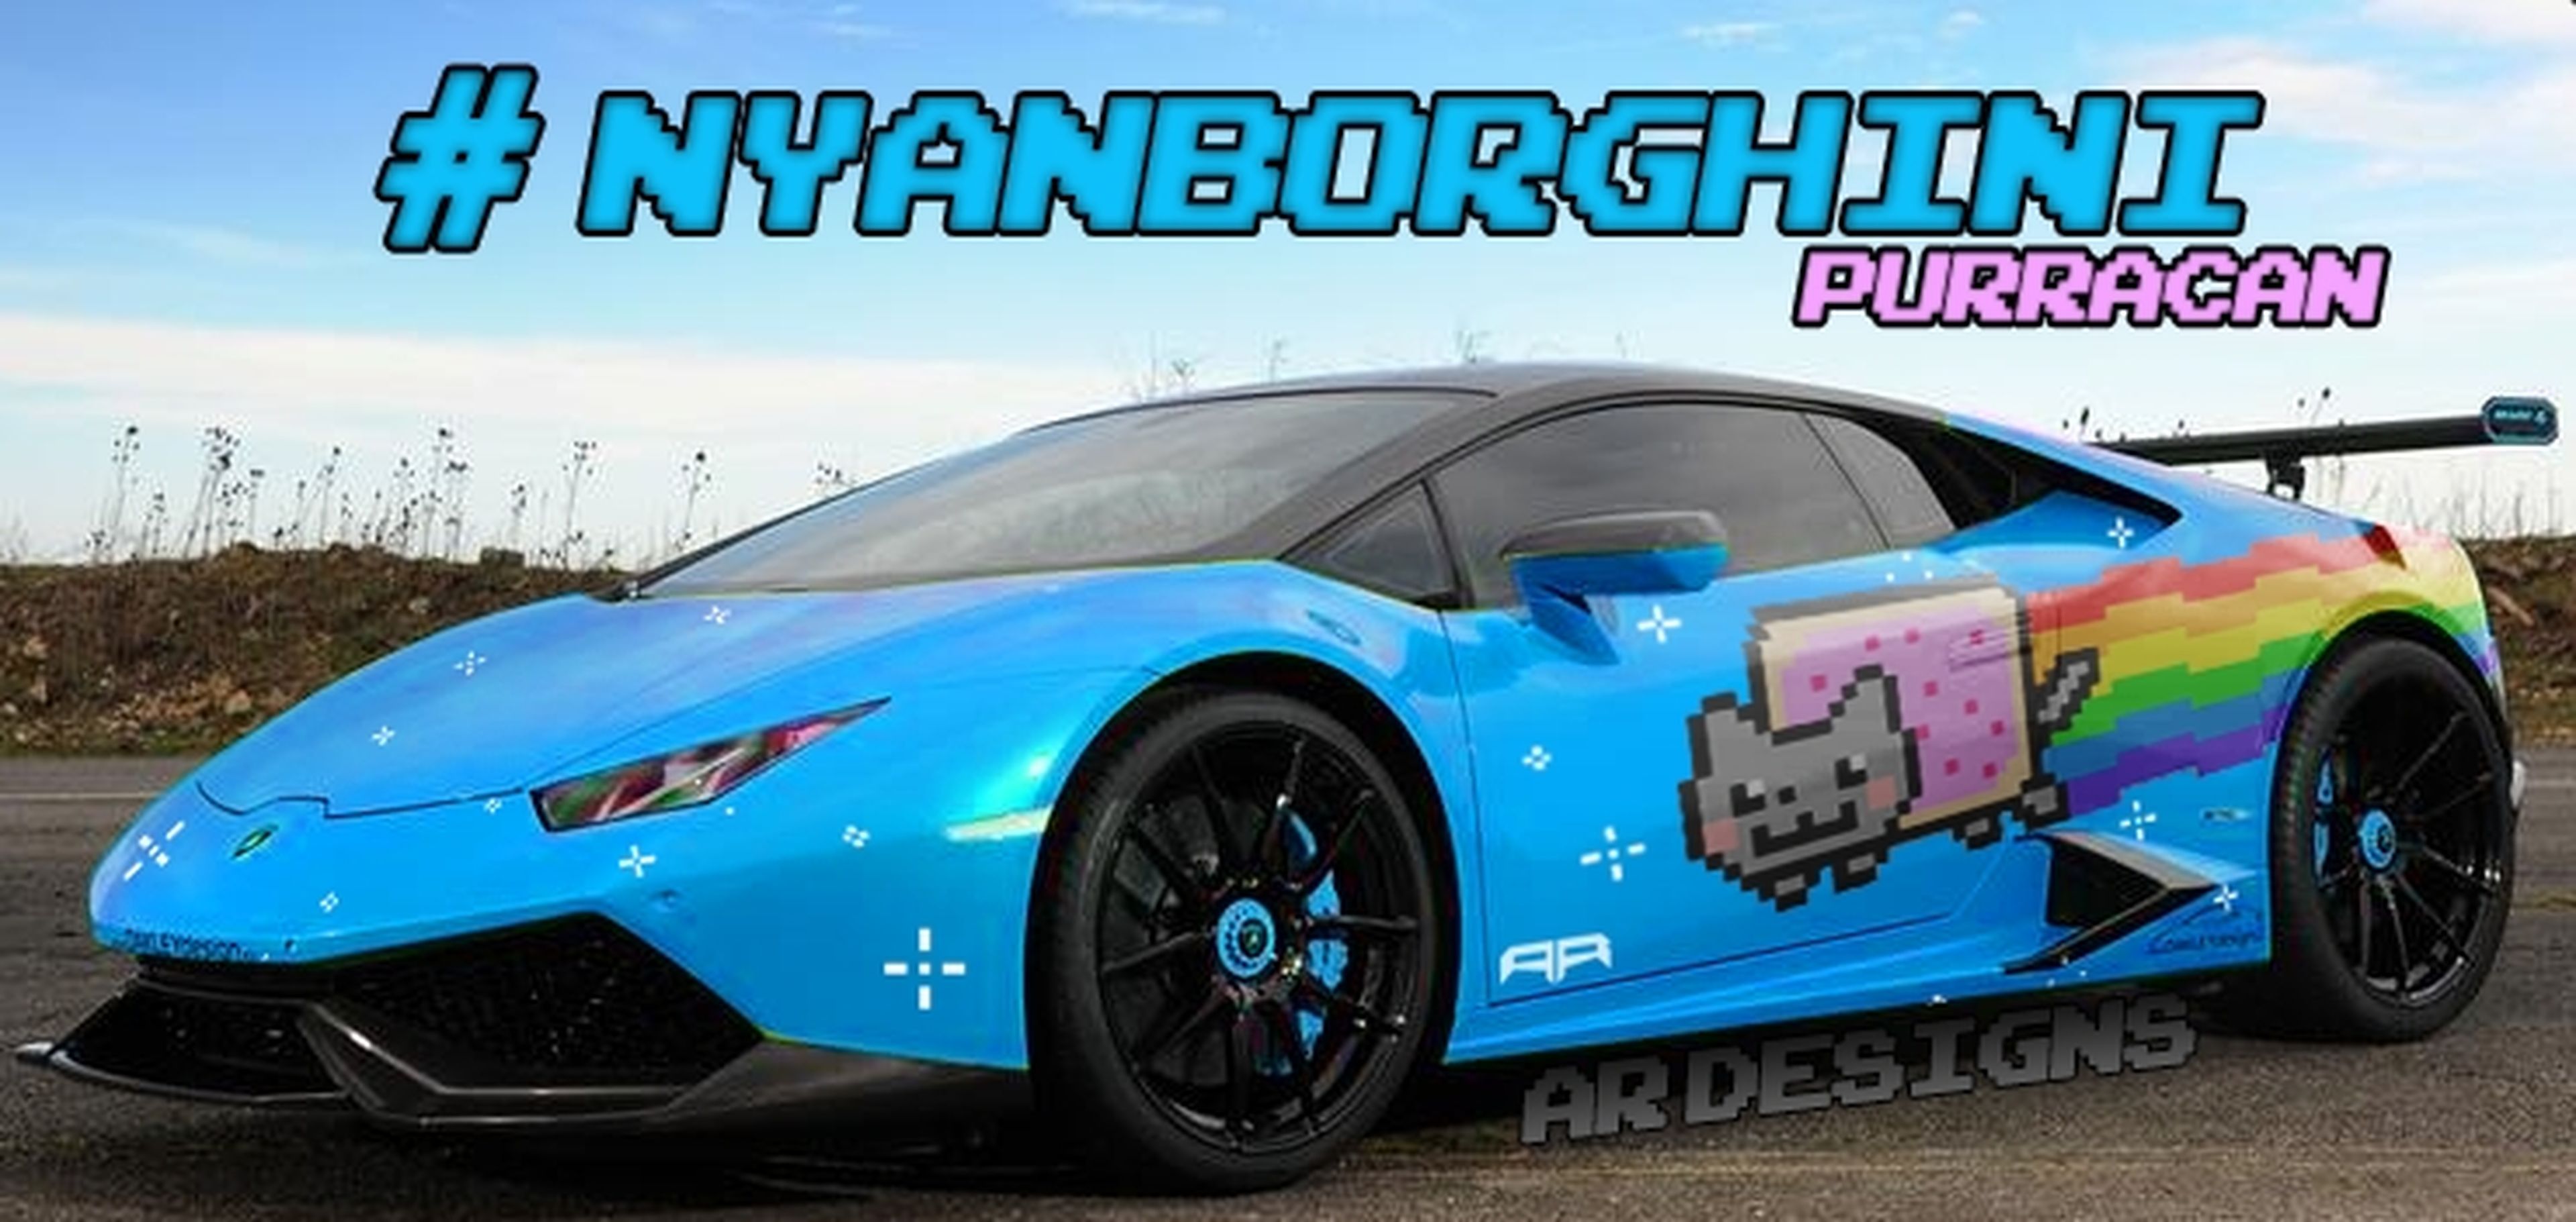 El Lamborghini Purracan de Deadmau5